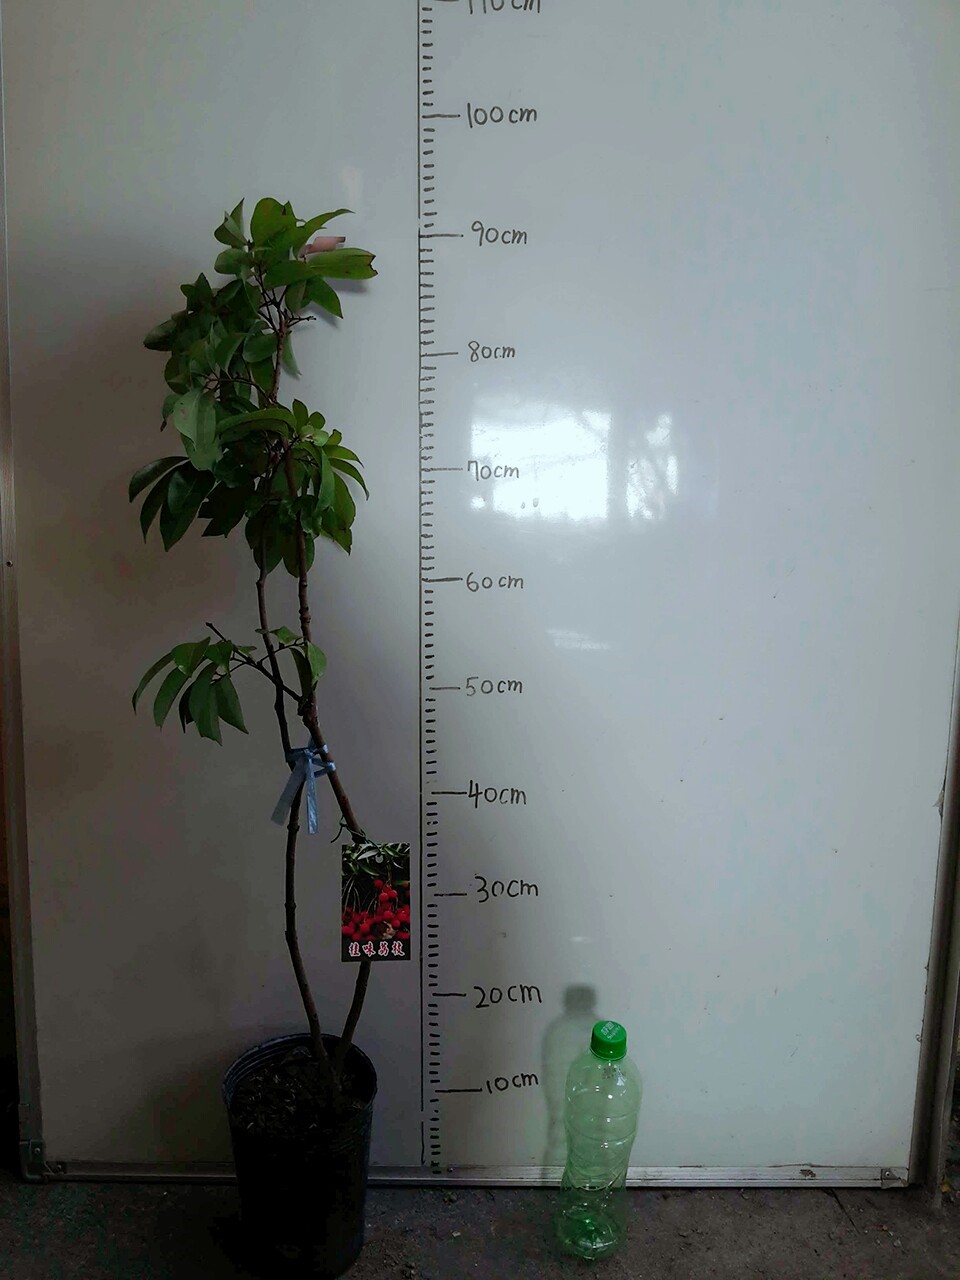 桂味荔枝(3~4尺高)-150